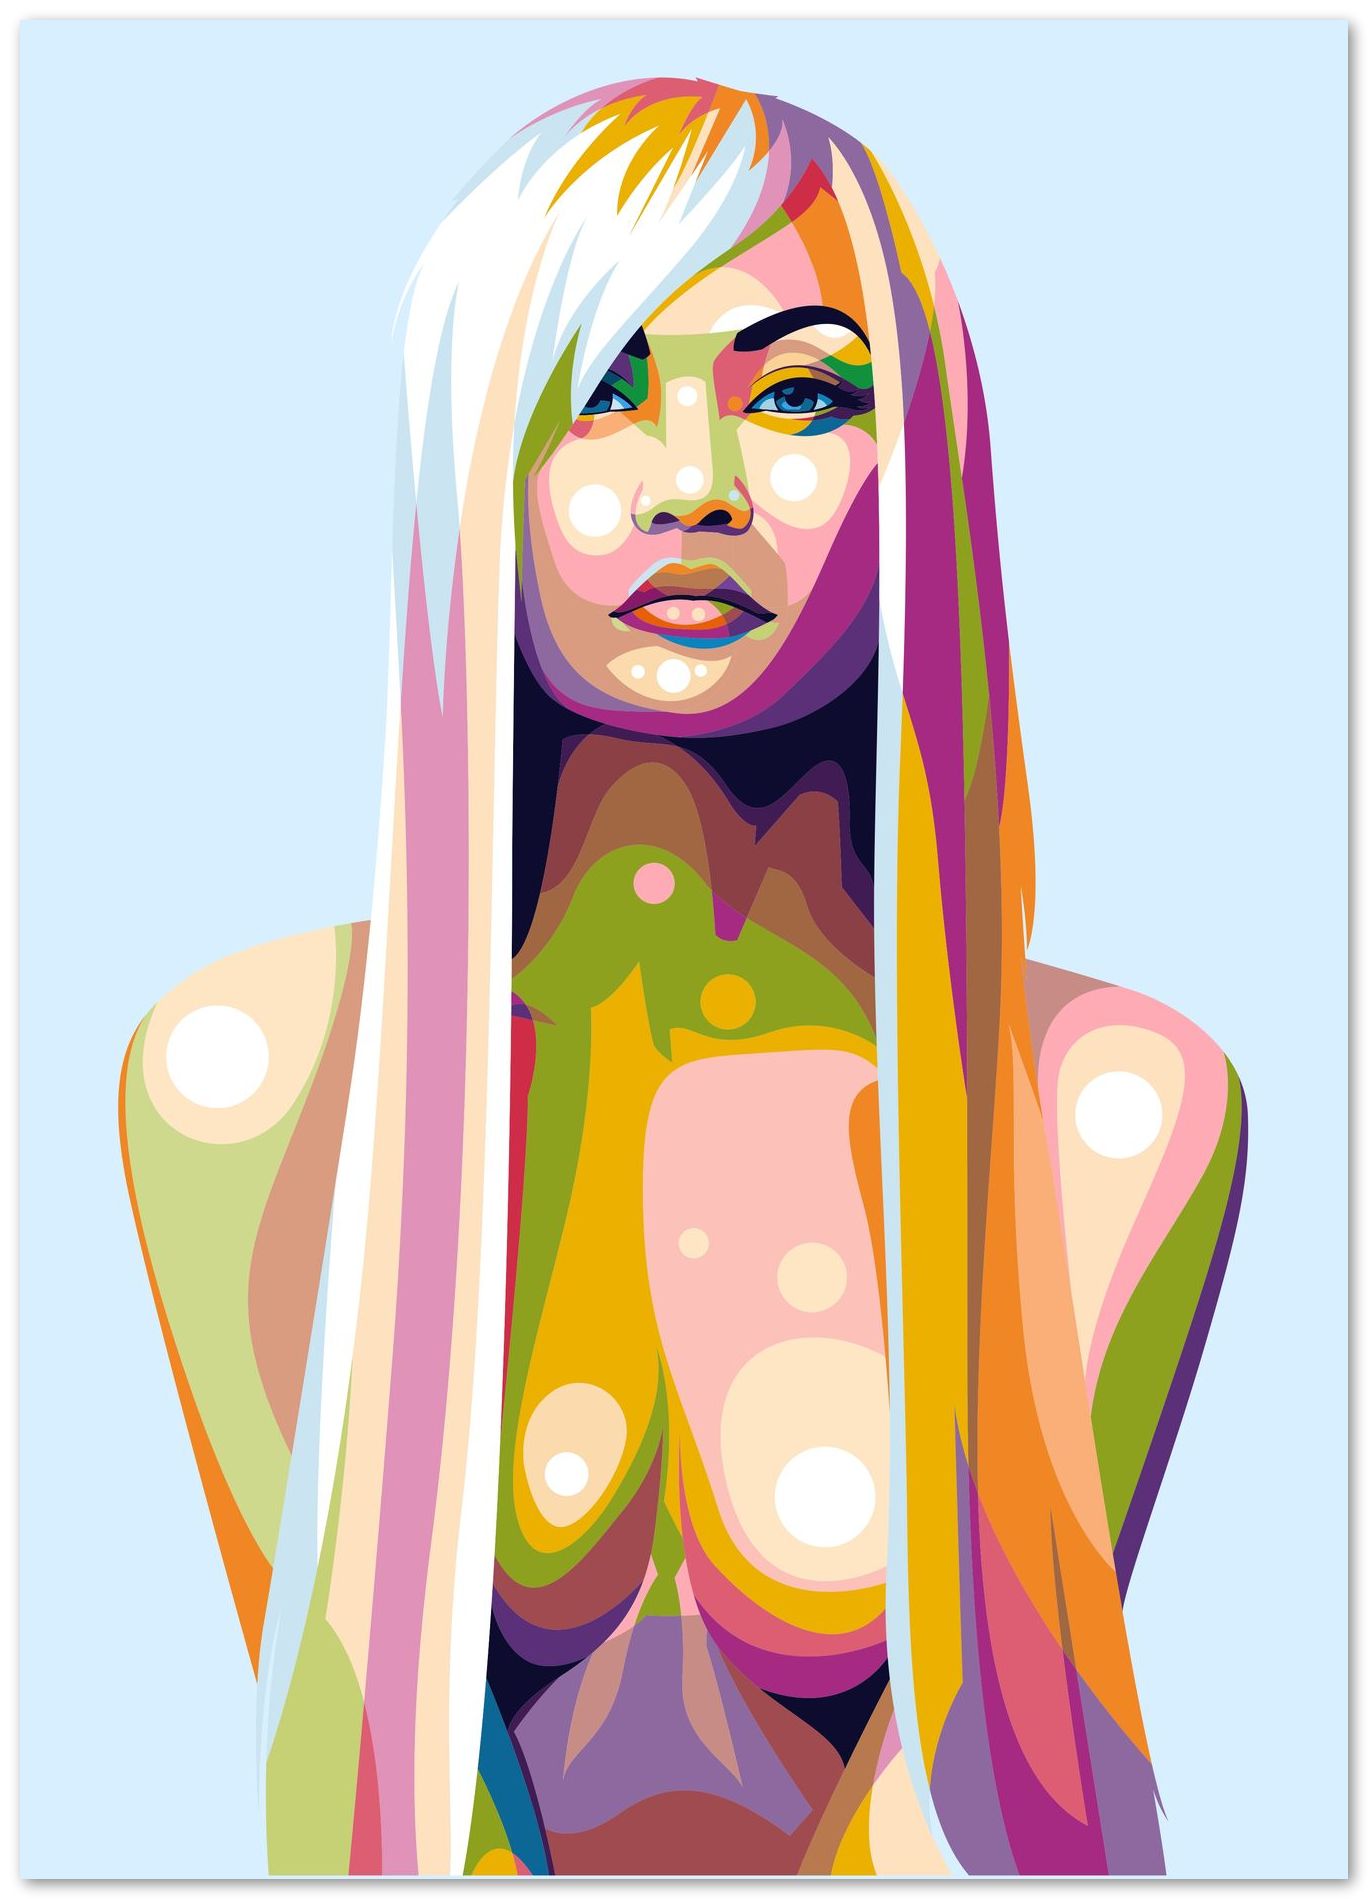 Hot Sexy Girl Pop Art - @WpapArtist